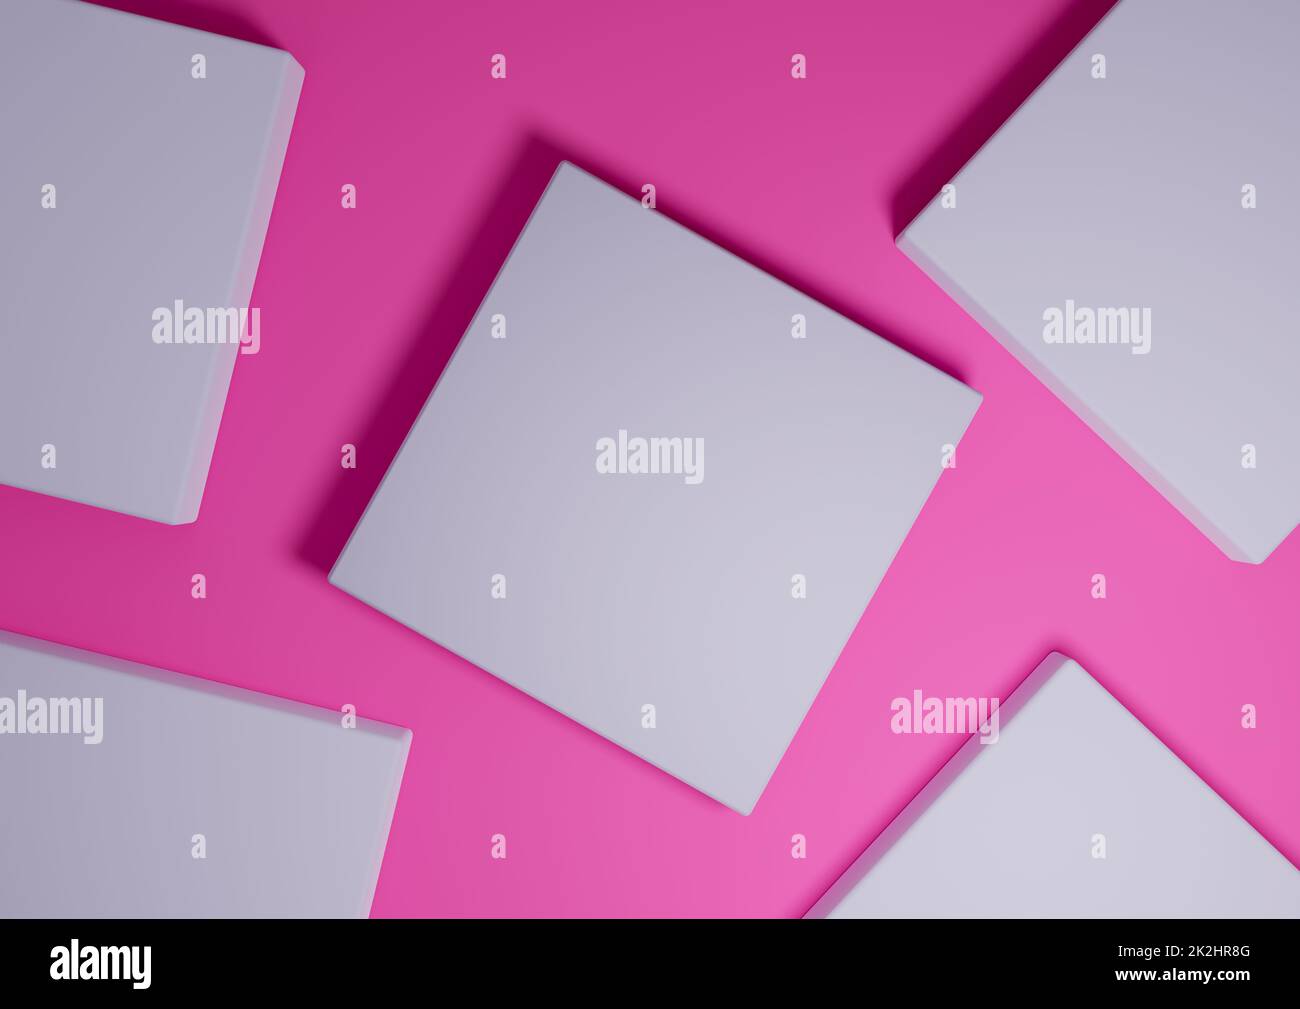 Helles Magenta, Neonpink, 3D Rendering minimal, einfache Draufsicht flach Lay Produktdisplay Hintergrund mit Podestständer und geometrischen Formen Stockfoto